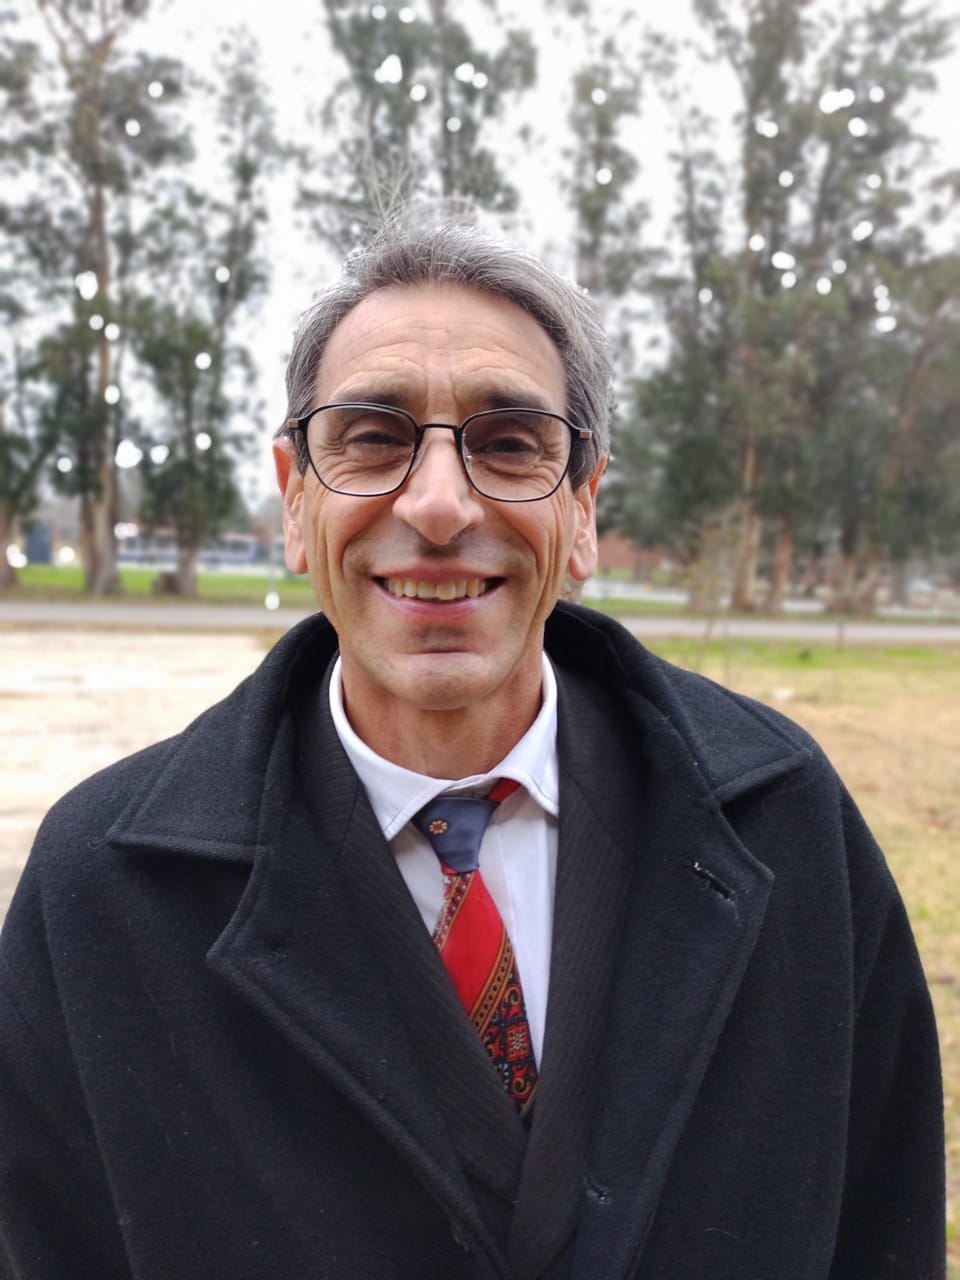 Dr. Rodolfo catalano